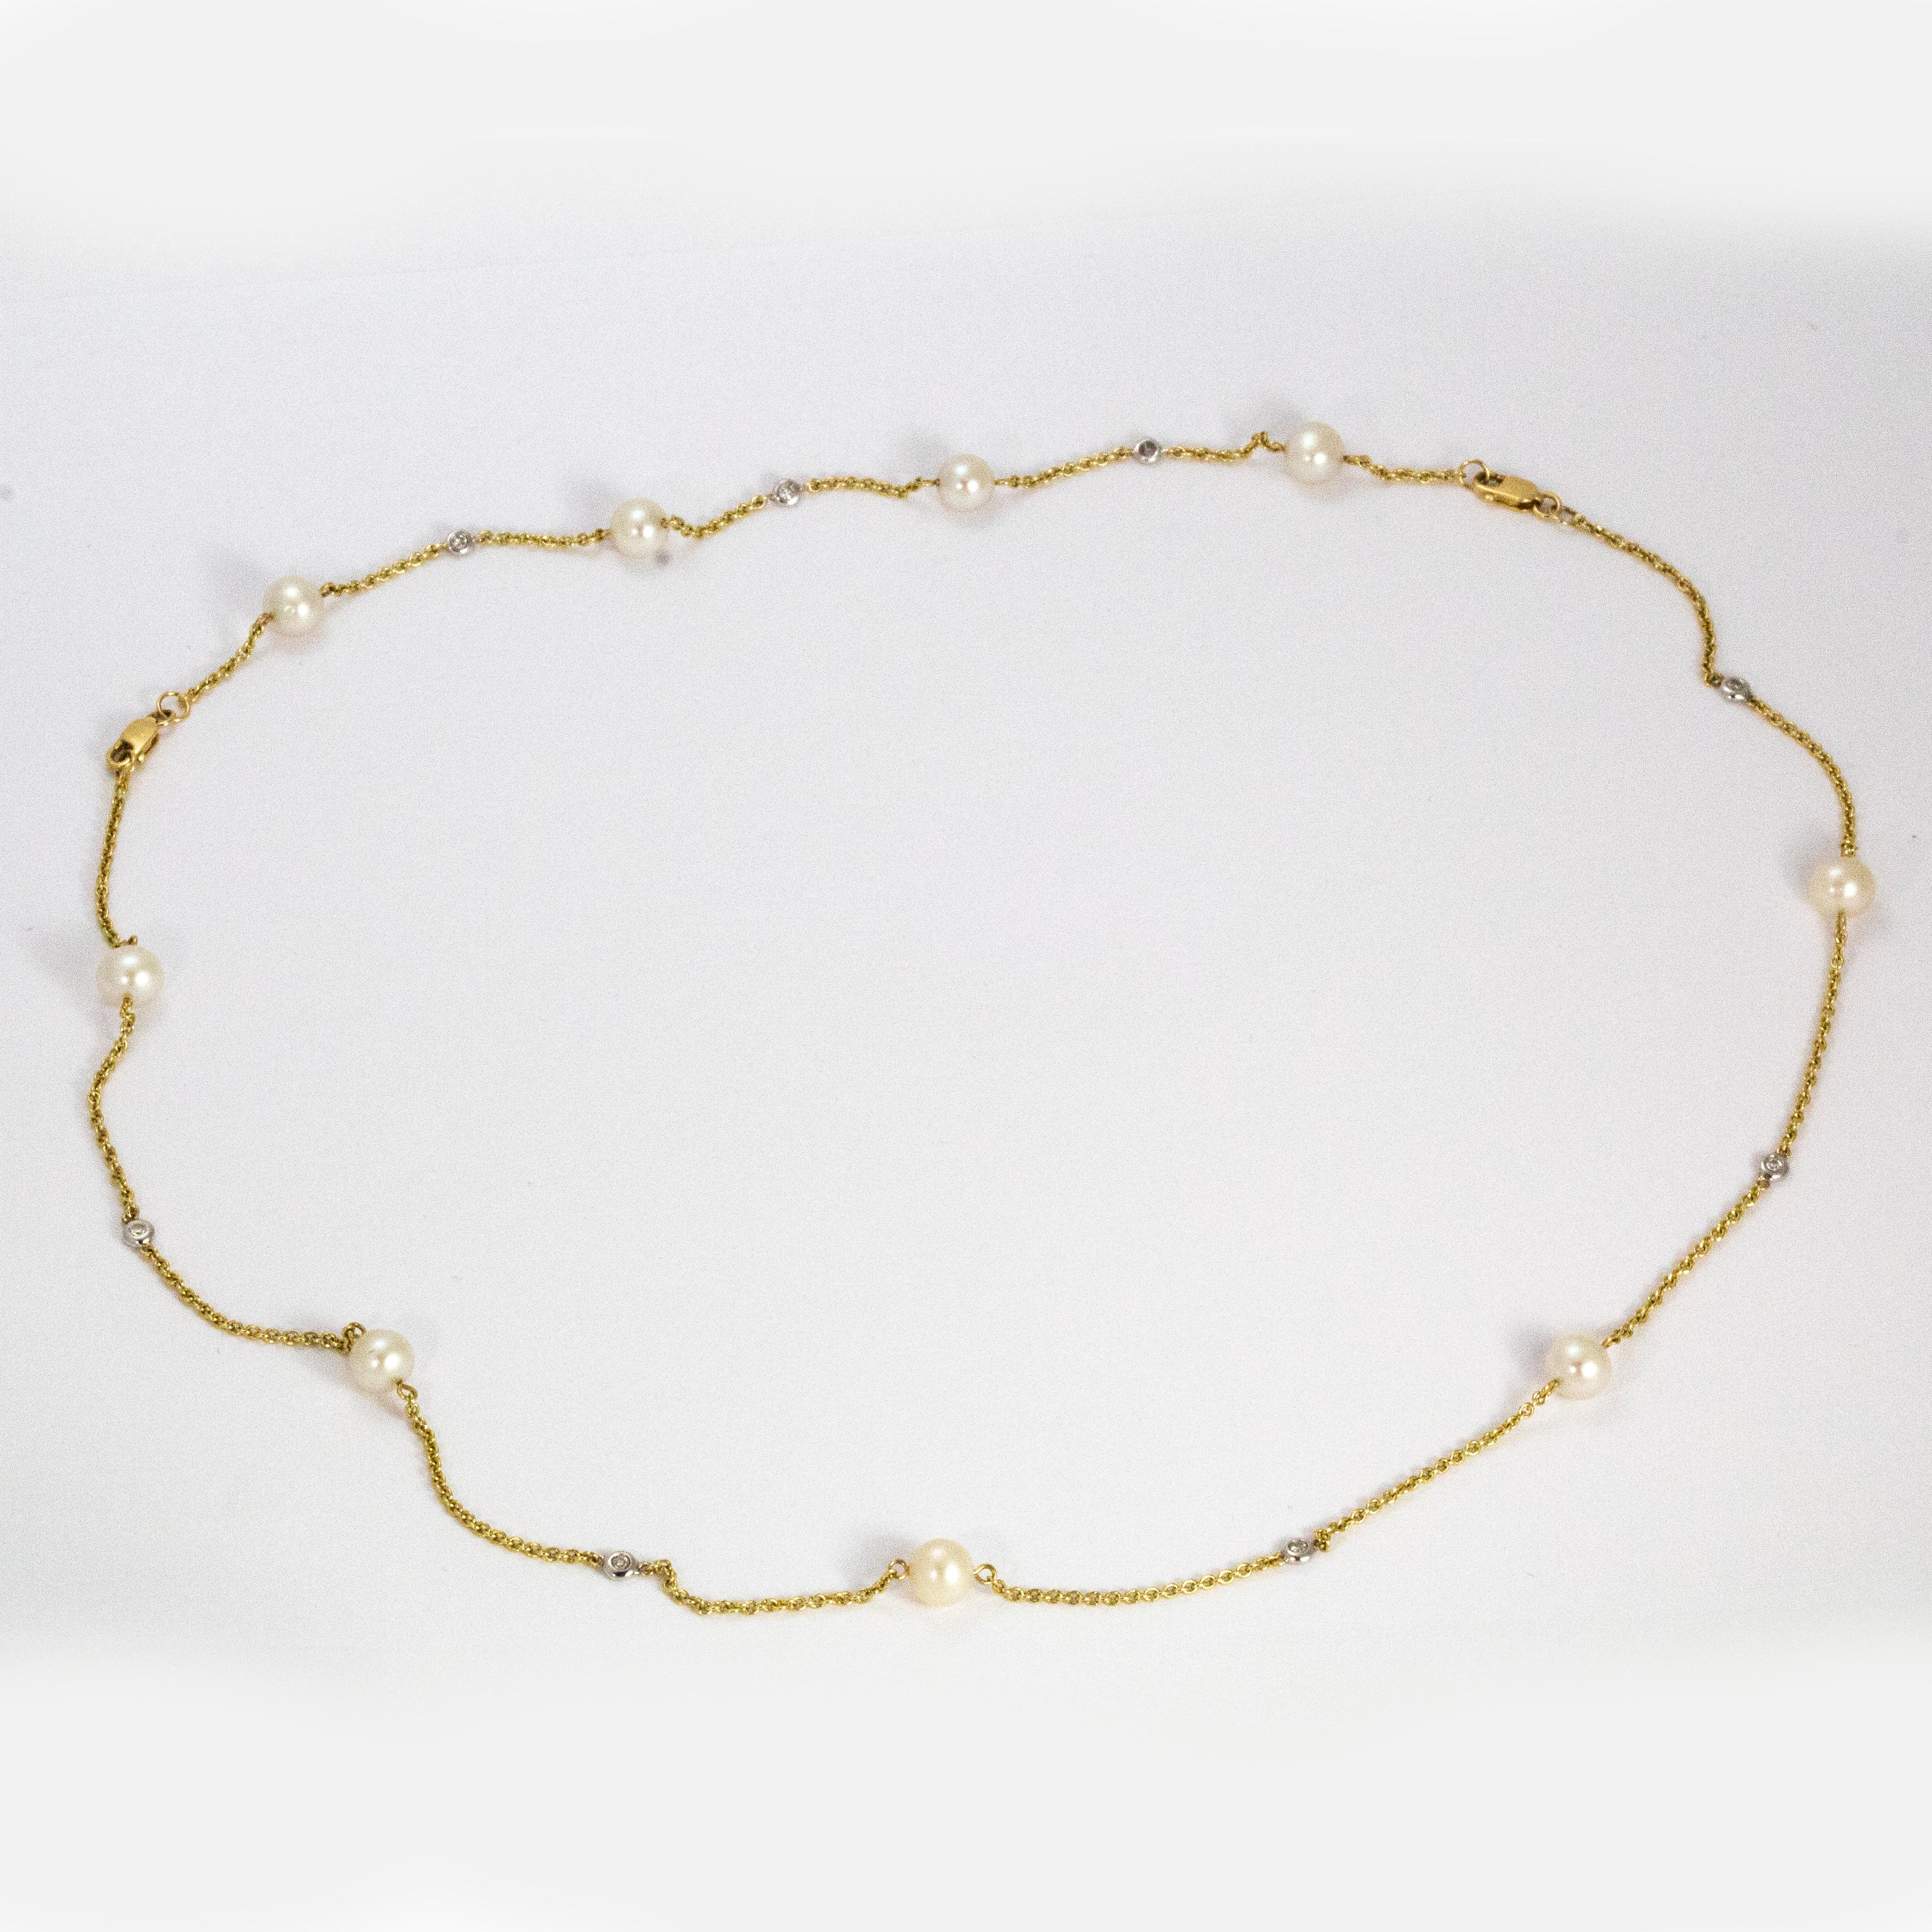 Délicat et incroyablement joli, ce collier en or 14ct contient 9 perles et des perles de culture  8 diamants. Comme vous pouvez le voir sur les images, ce collier peut également être transformé en bracelet !

Longueur du collier : 16 1/2